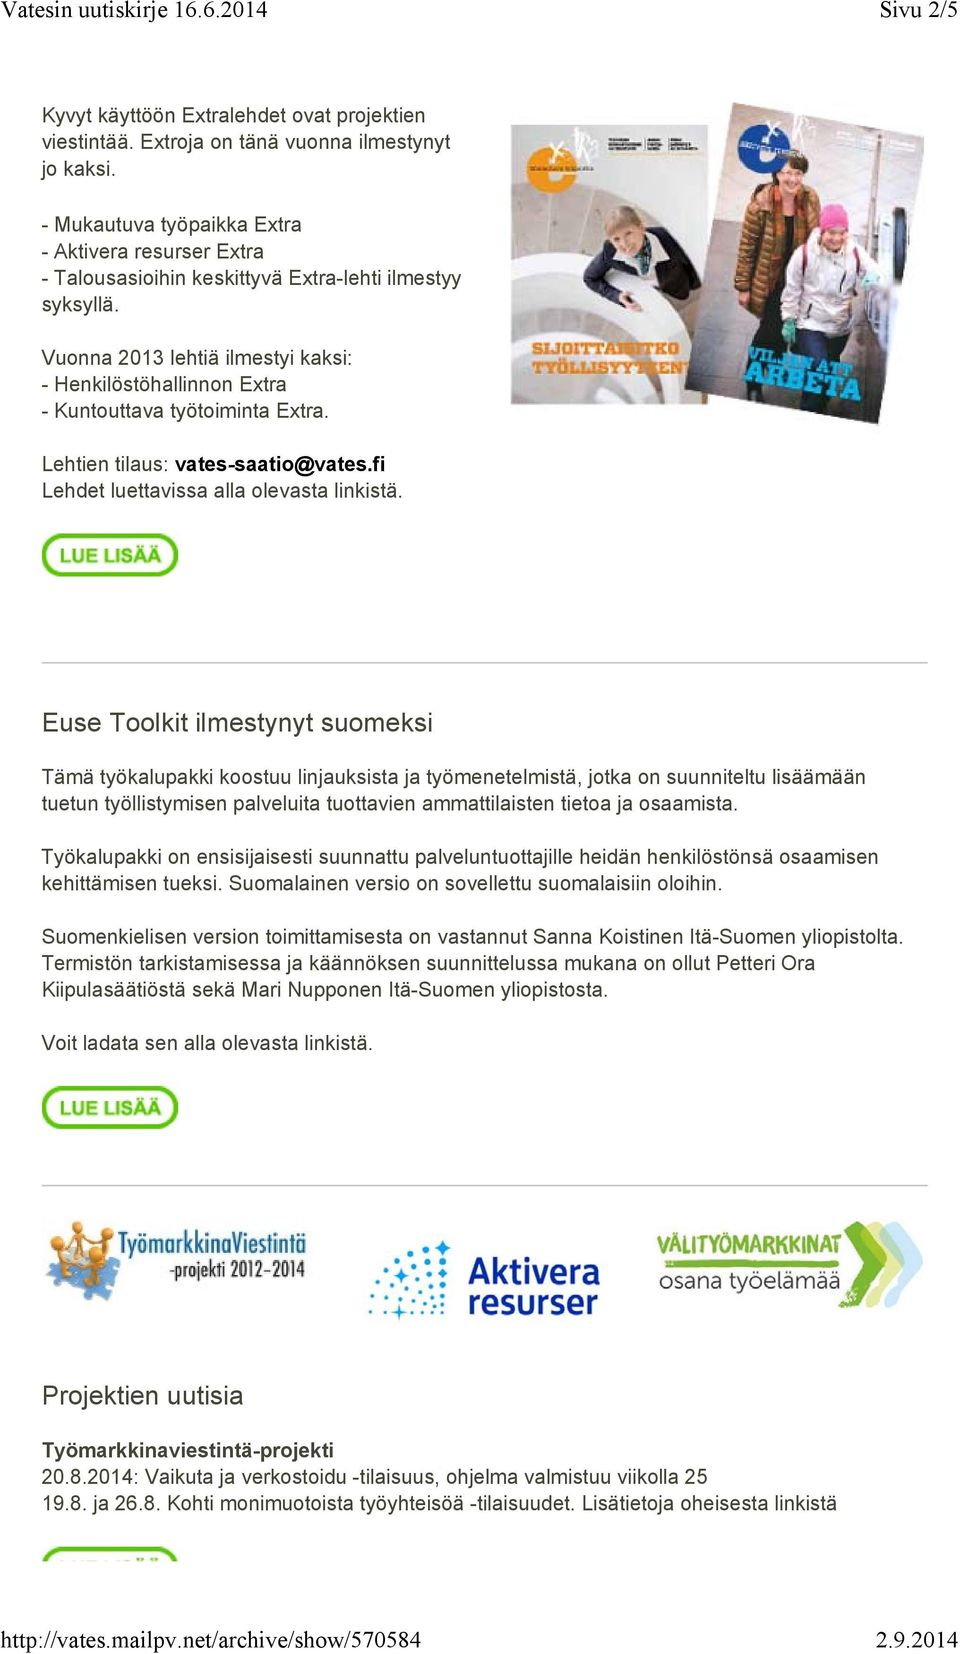 Vuonna 2013 lehtiä ilmestyi kaksi: - Henkilöstöhallinnon Extra - Kuntouttava työtoiminta Extra. Lehtien tilaus: vates-saatio@vates.fi Lehdet luettavissa alla olevasta linkistä.